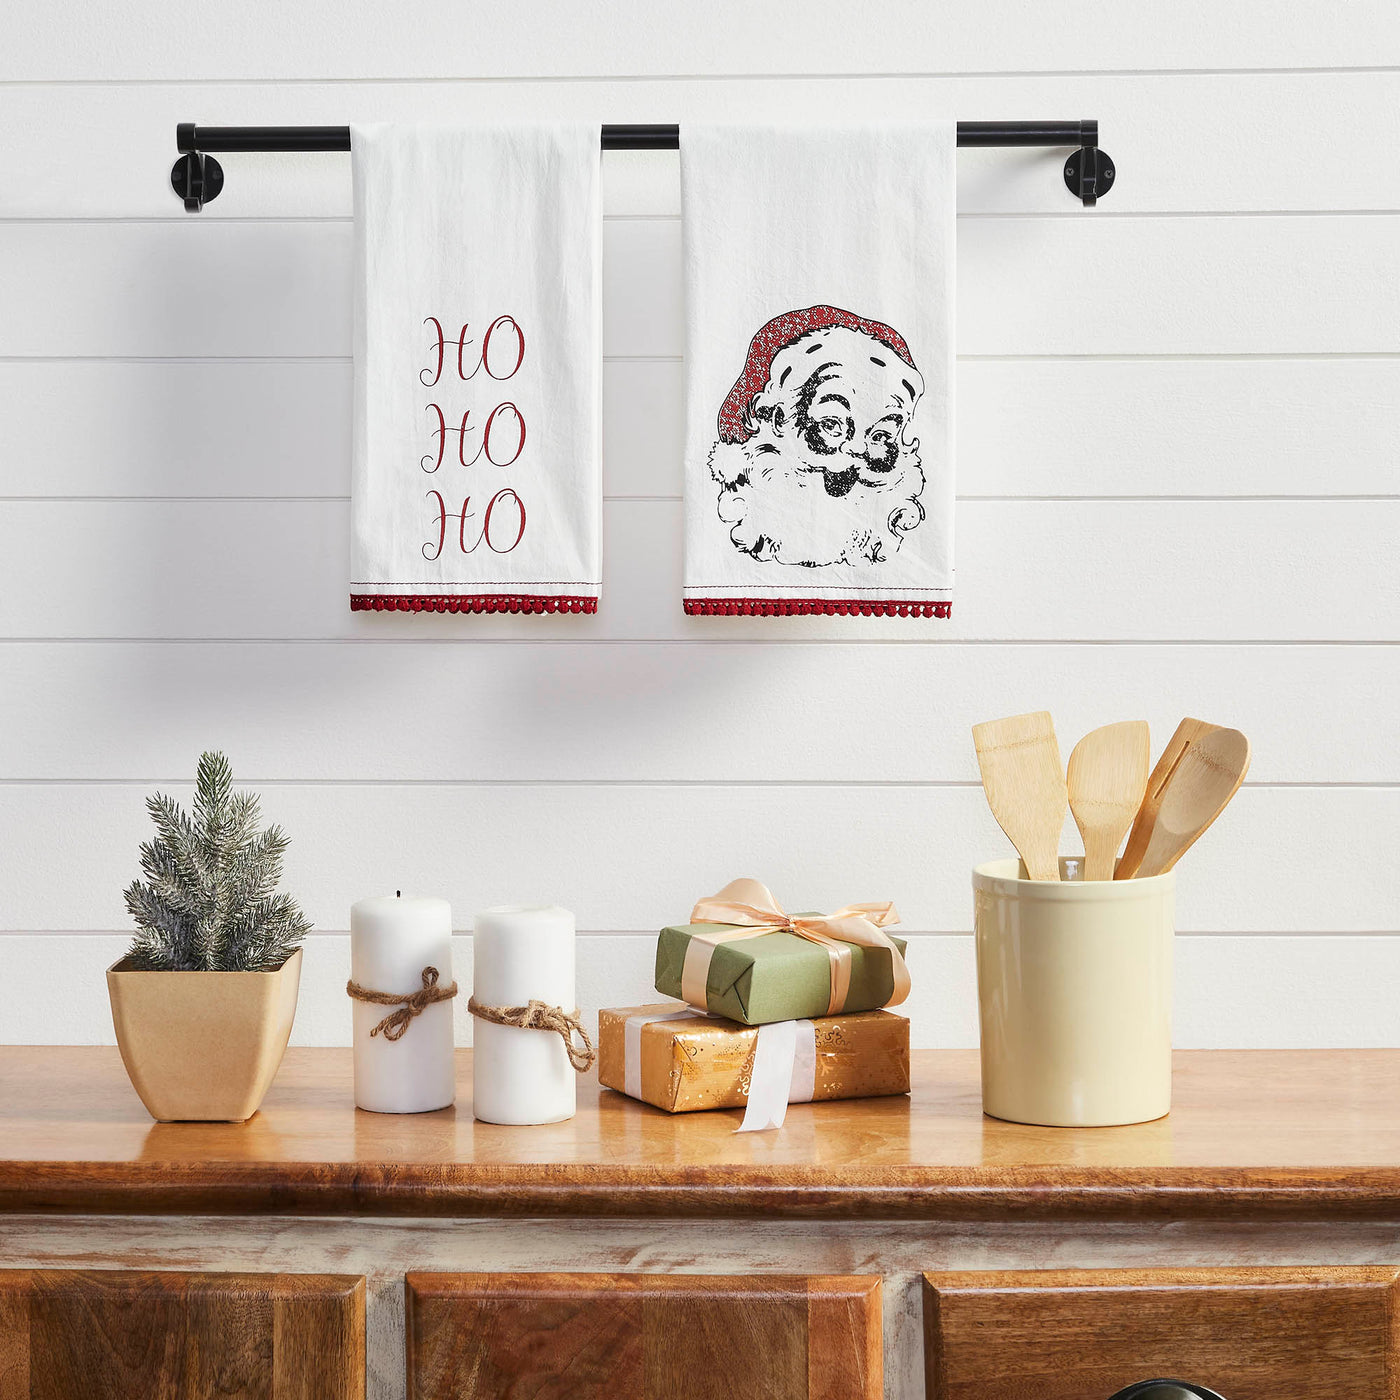 💙 Kringle Ho Ho Ho White Set of 2 Tea Towels